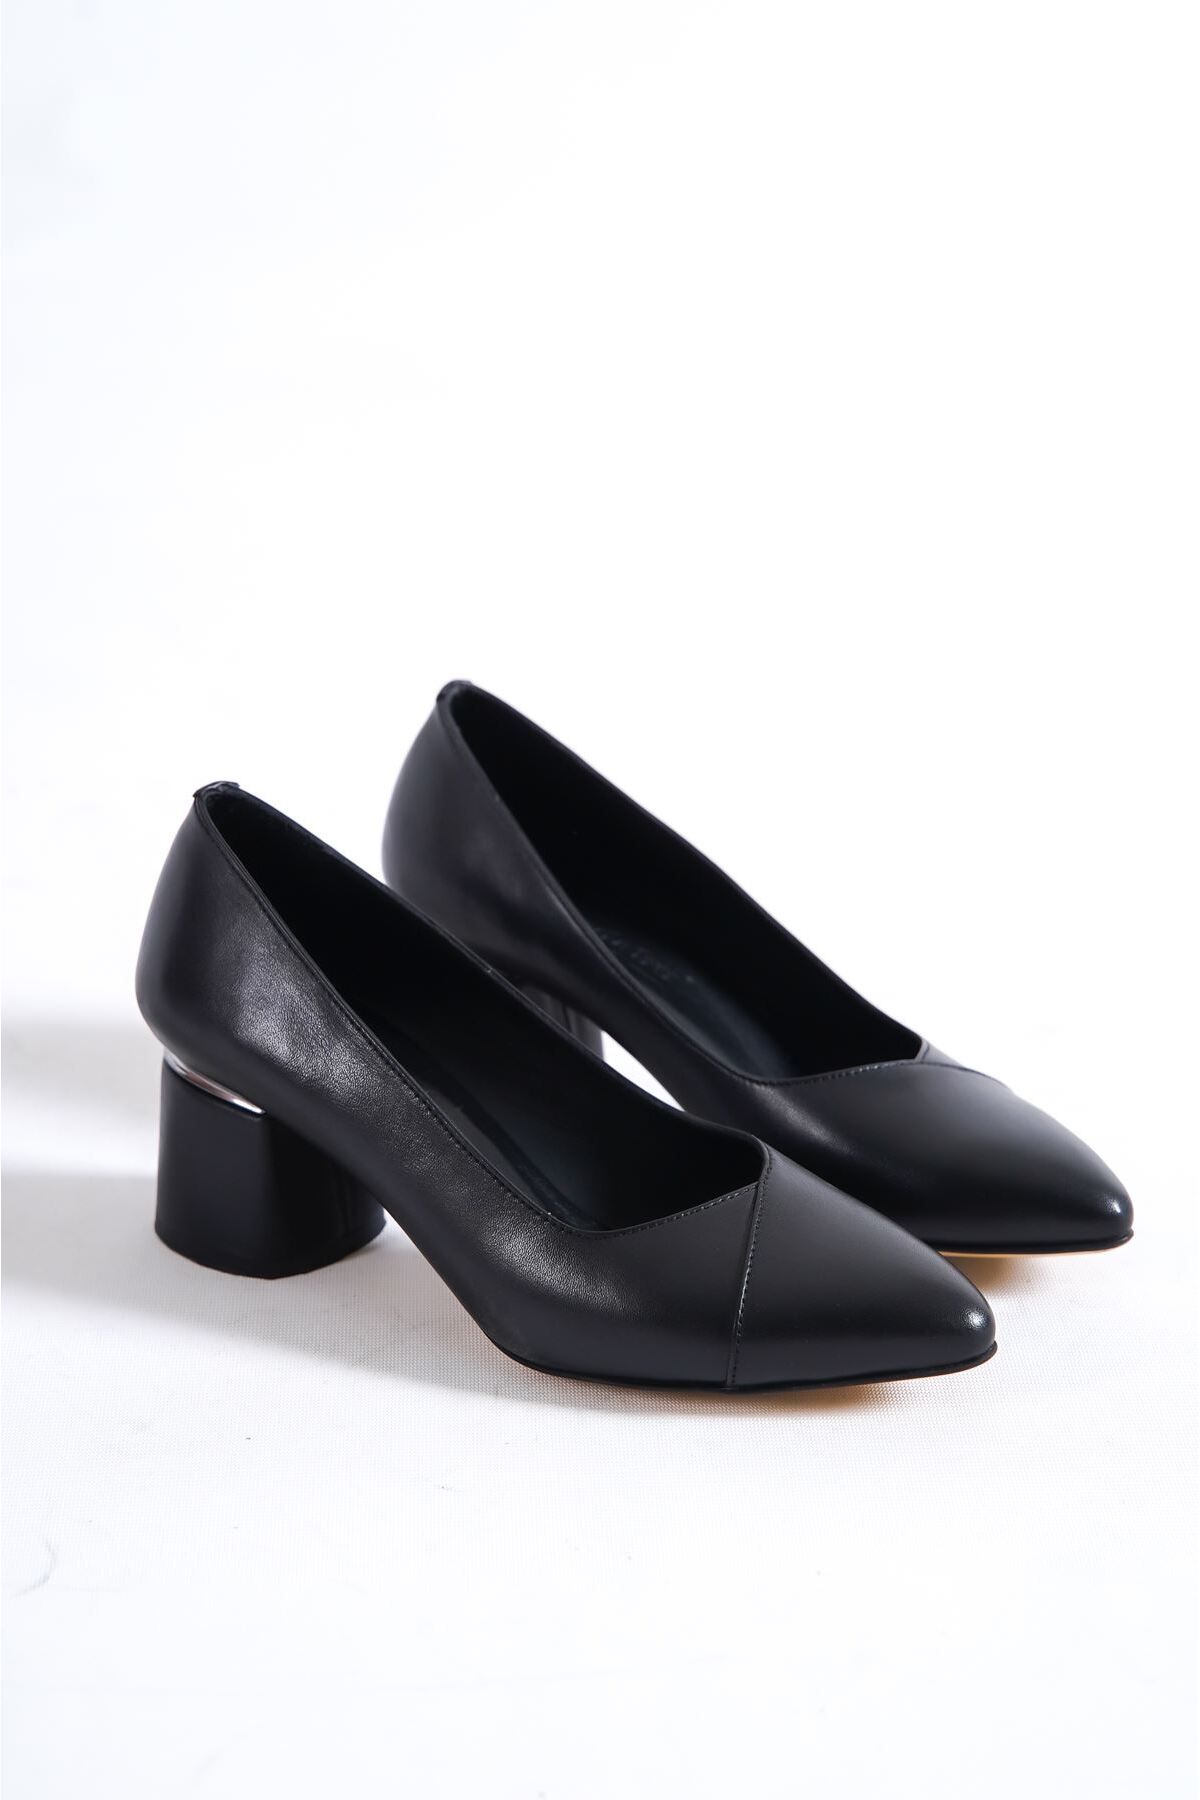 Tamdabu Ayakkabı Hakiki Deri Galvaniz Topuklu Siyah Kadın Ayakkabı Tmd12072